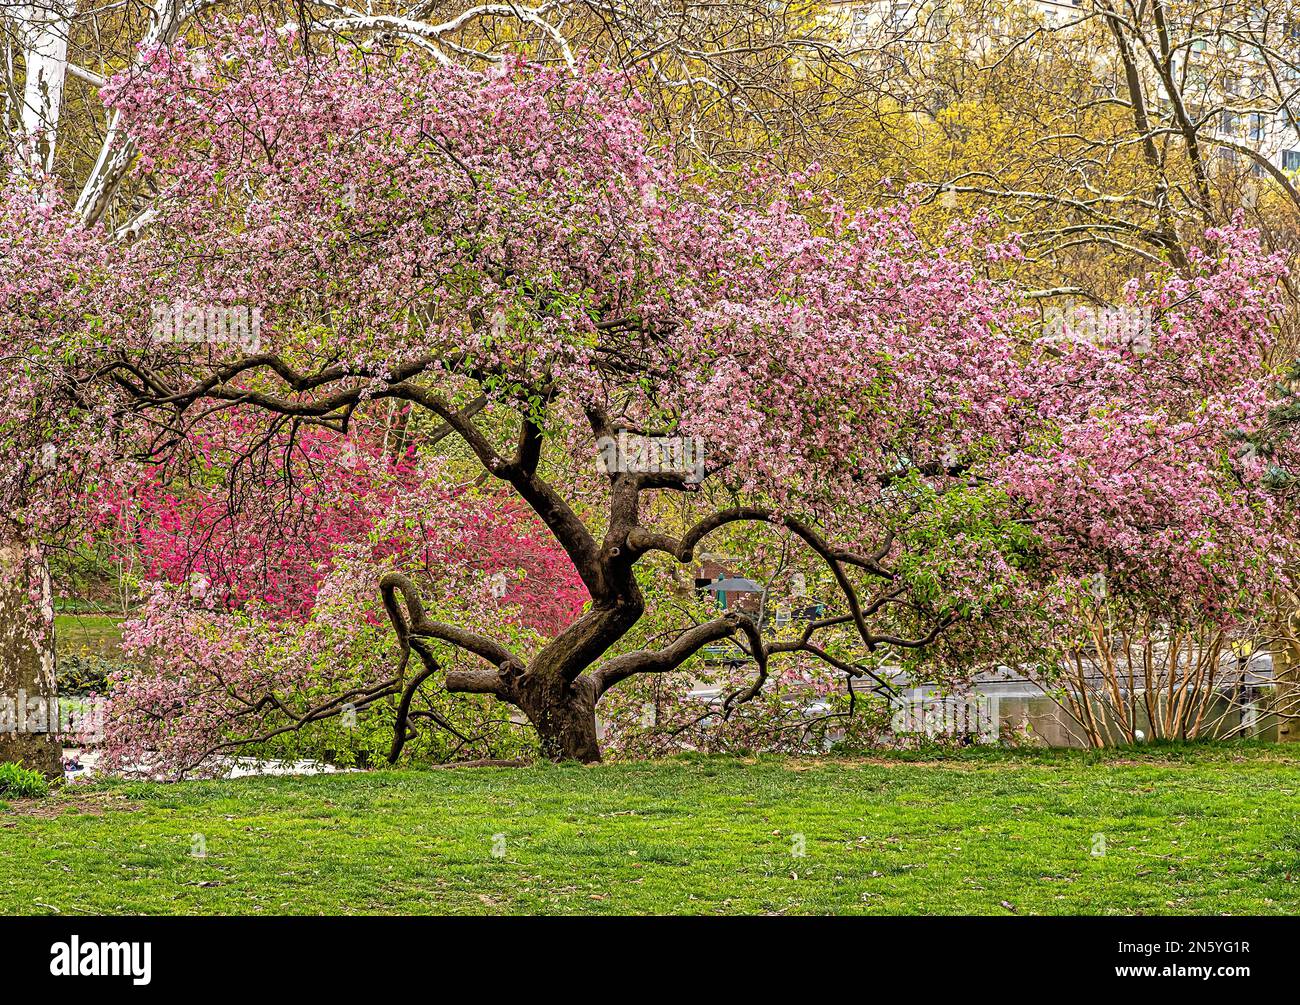 Frühling im Central Park, New York City, japanischer Kirschbaum; Stockfoto